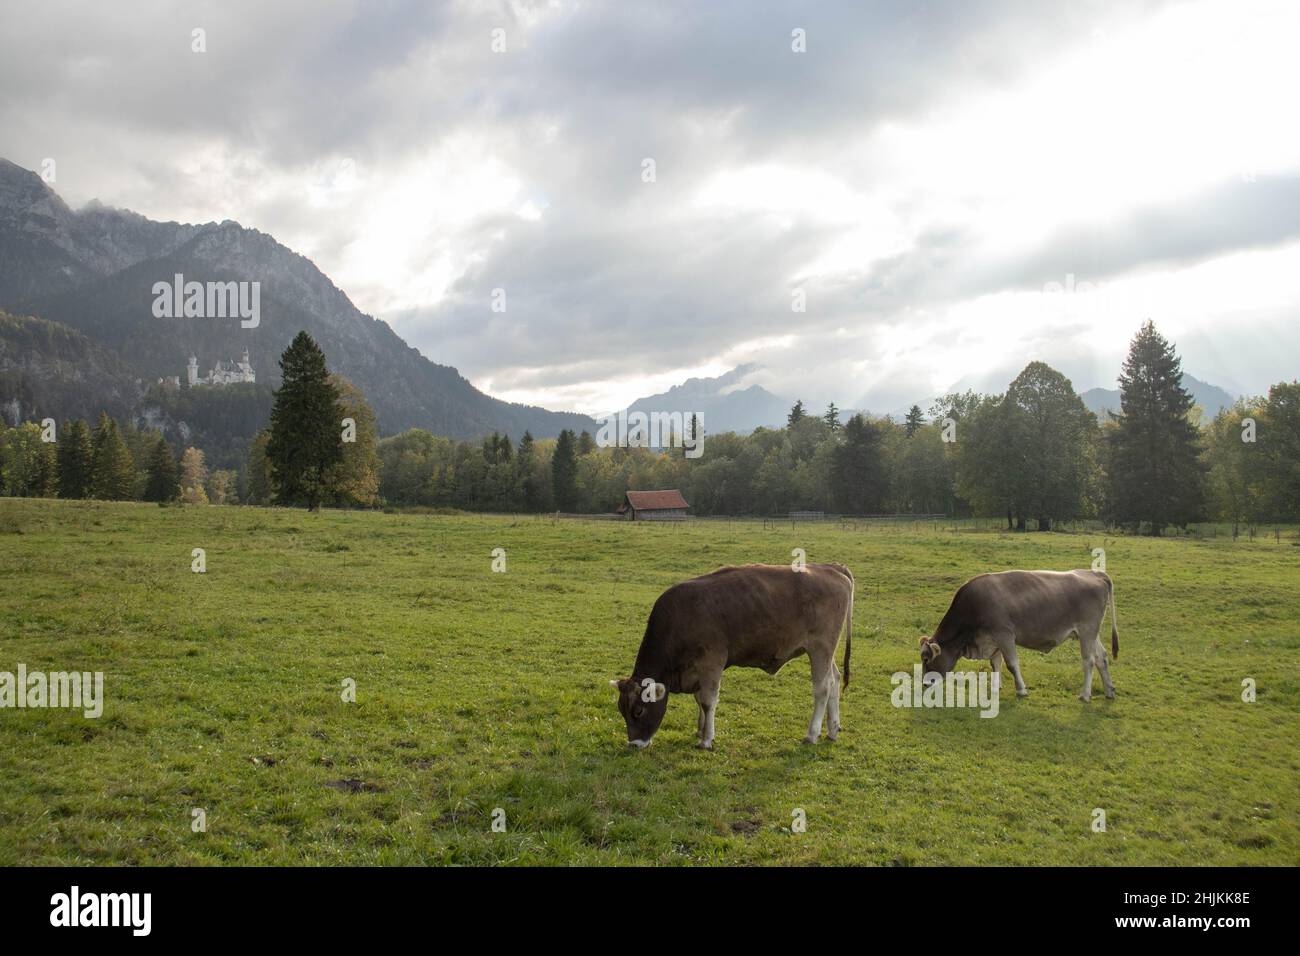 Zwei Kühe grasen auf einer saftig grünen Weise. Im Hintergrund sieht man das Schloss Neuschwanstein mit Bergkulisse. Stock Photo